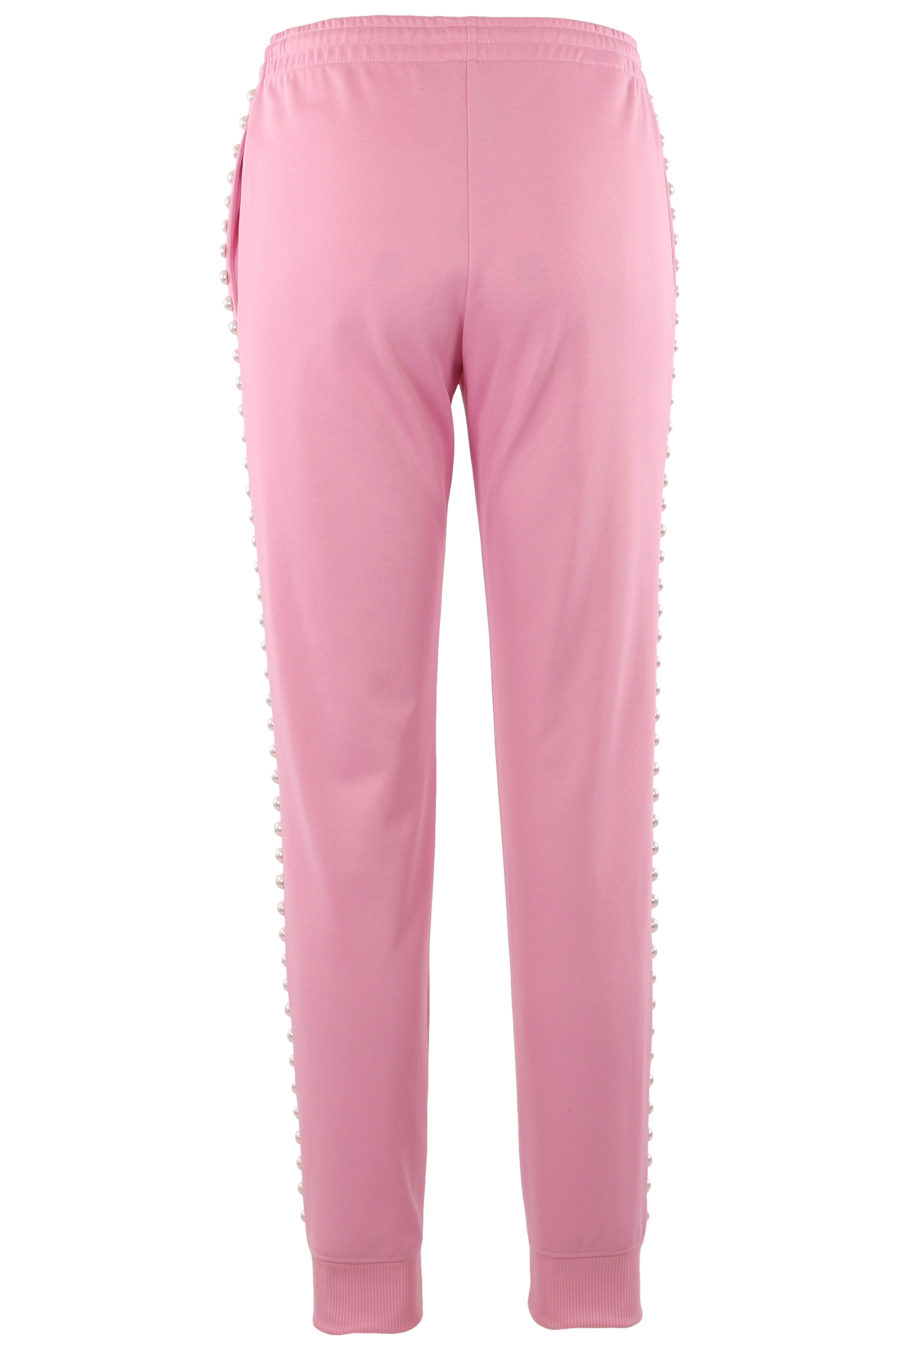 Pantalón de color rosa con perlas - cb5d250b45de3c86de2a5e9a46b1b07137873bc7